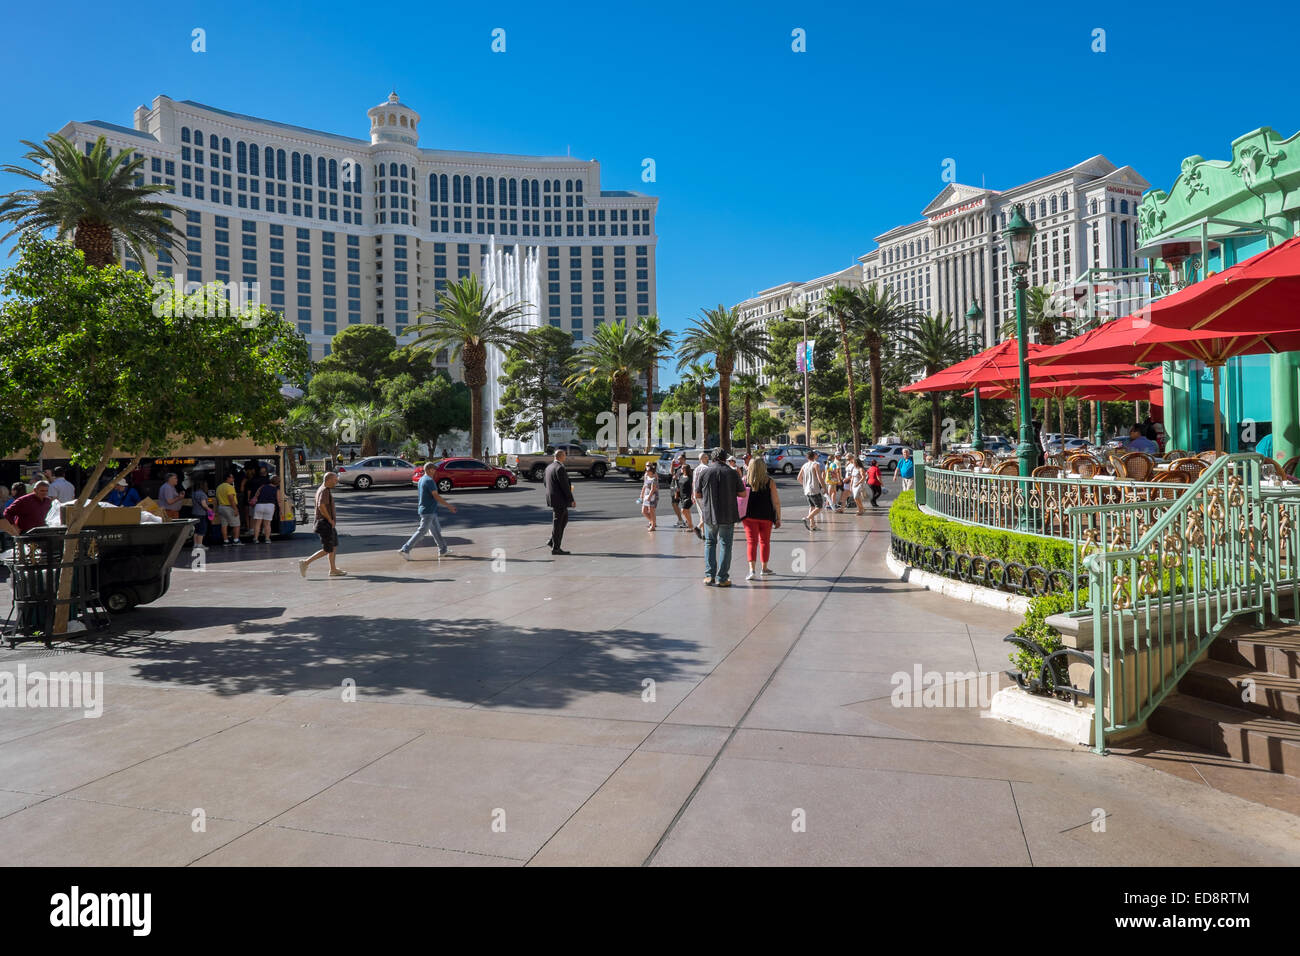 Esterni di Bellagio (sinistra) e Caesars Palace (a destra) all'altro lato di Las Vegas Boulevard. Foto Stock